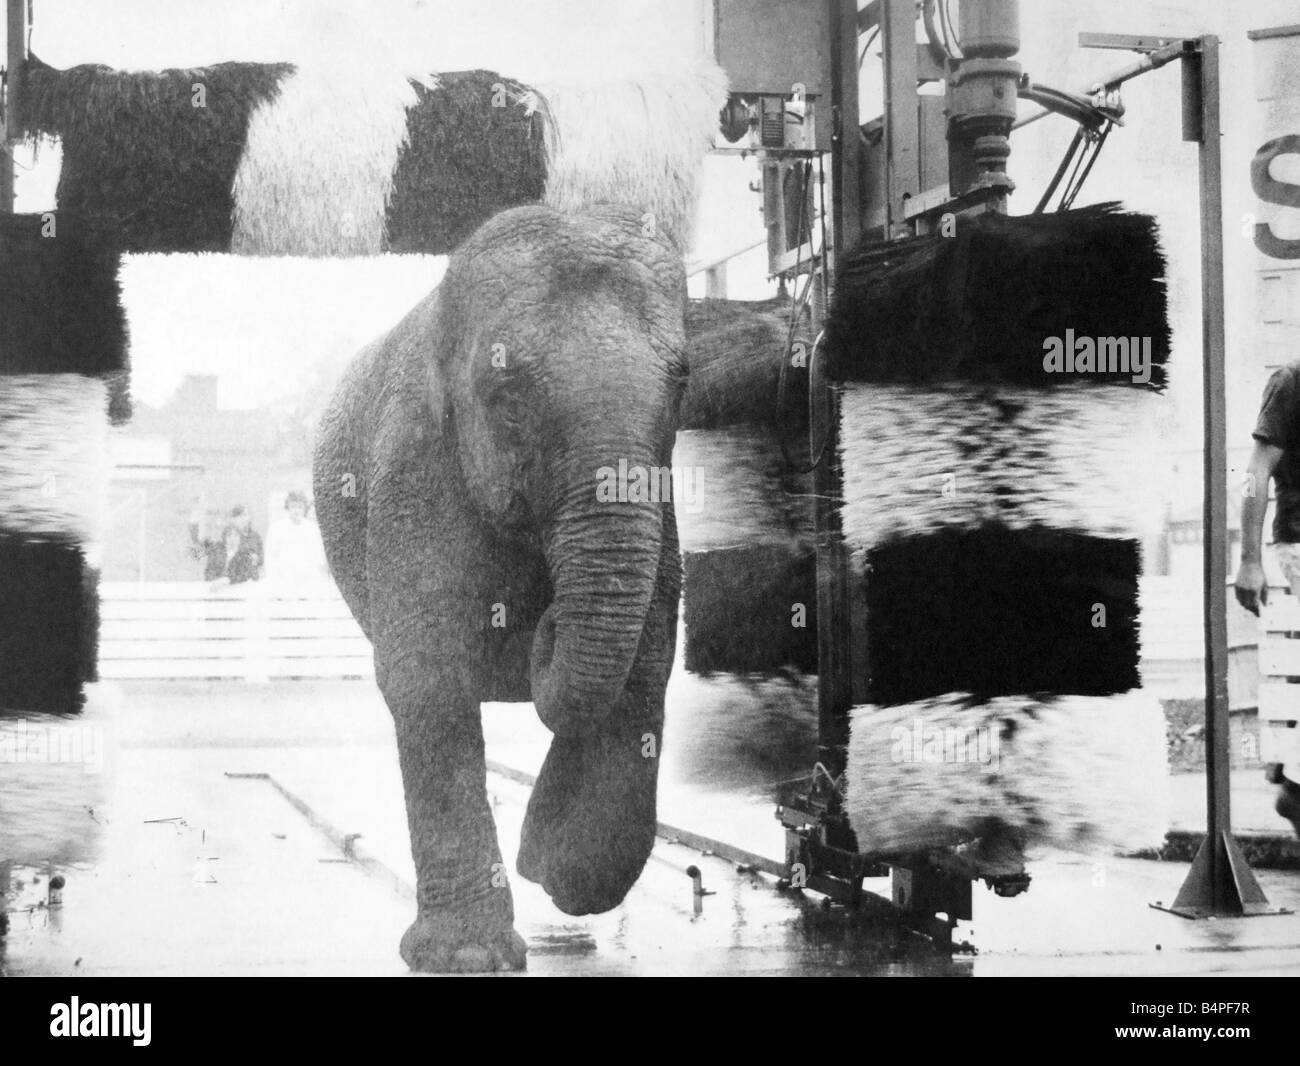 Walsall Football Club s car wash è diventato un jumbo jet per un tempo oggi Gilda un bambino di 2 anni circus elephant ha preso un bagno nella panda car wash sul piazzale dei borsisti Park stazione di riempimento 1970 Foto Stock